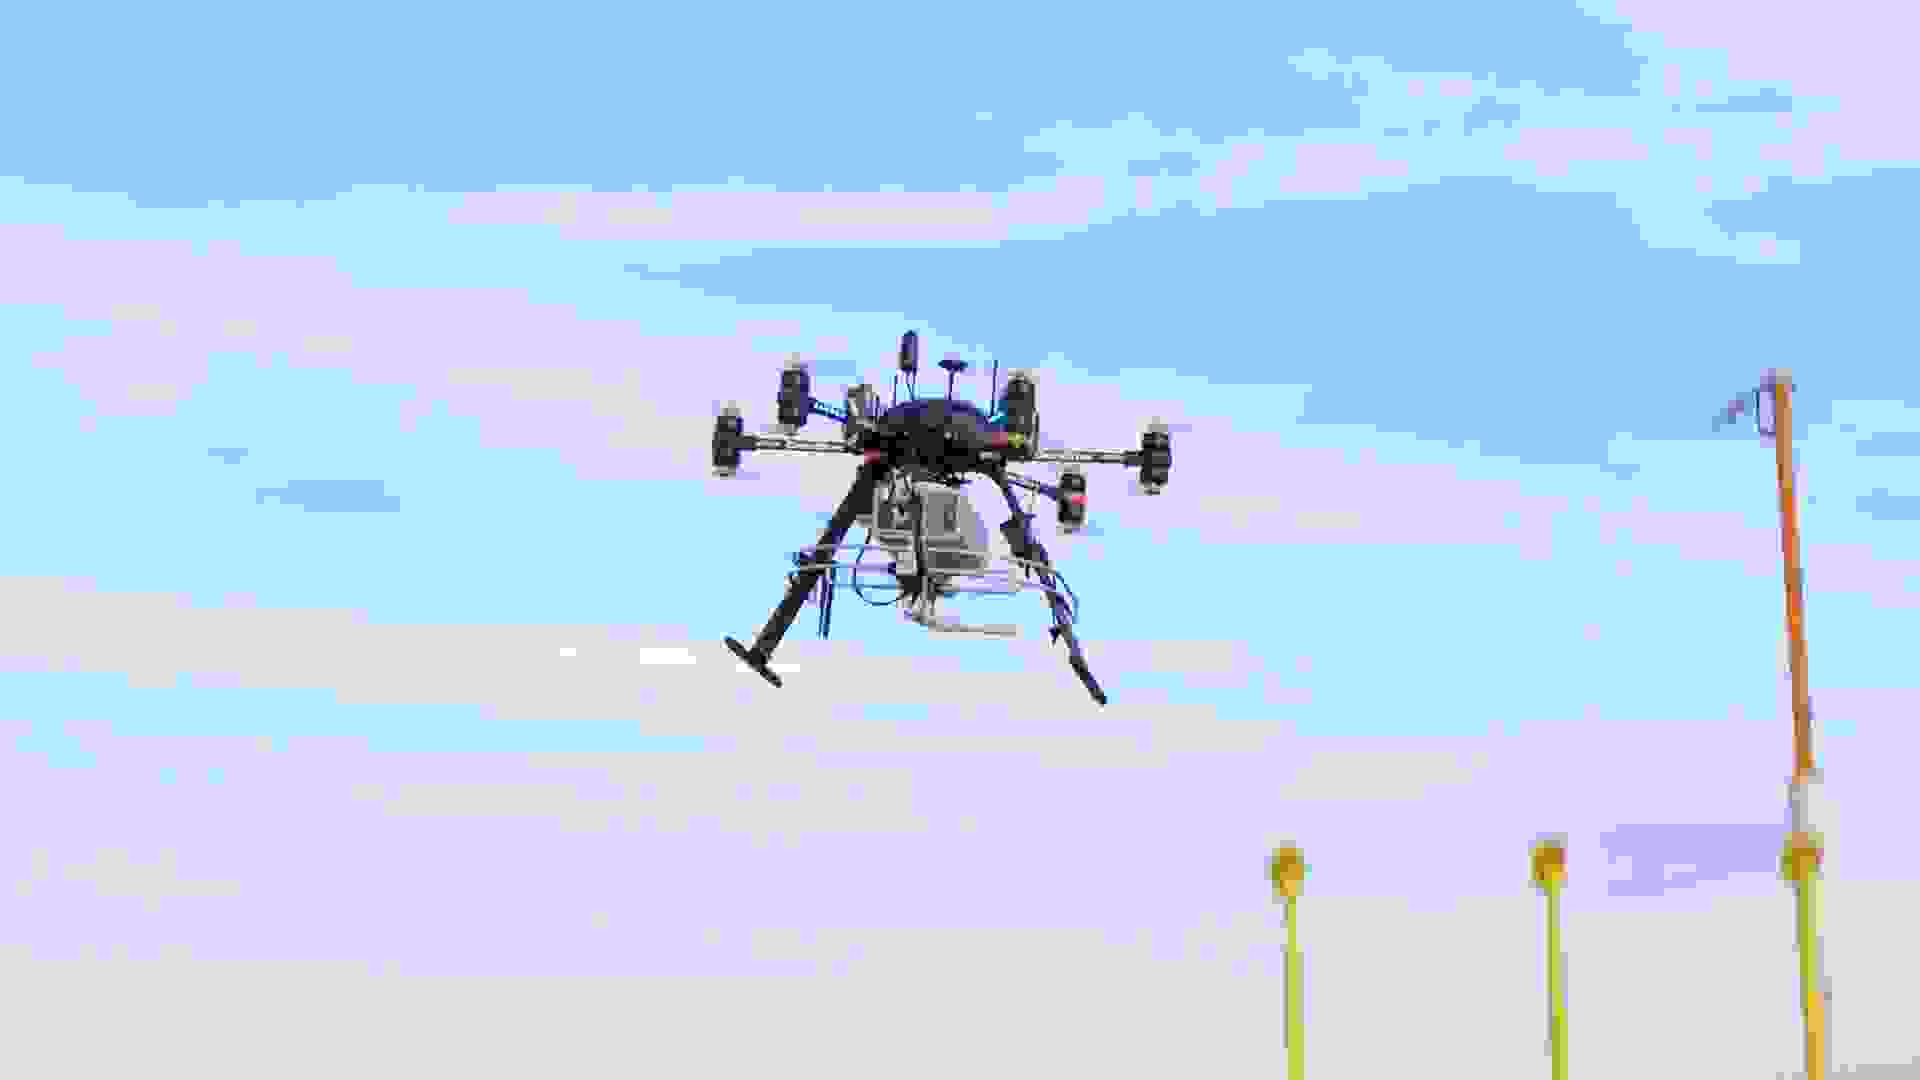 Testvluchten uitgevoerd op Brussels Airport met een nieuwe gespecialiseerde drone